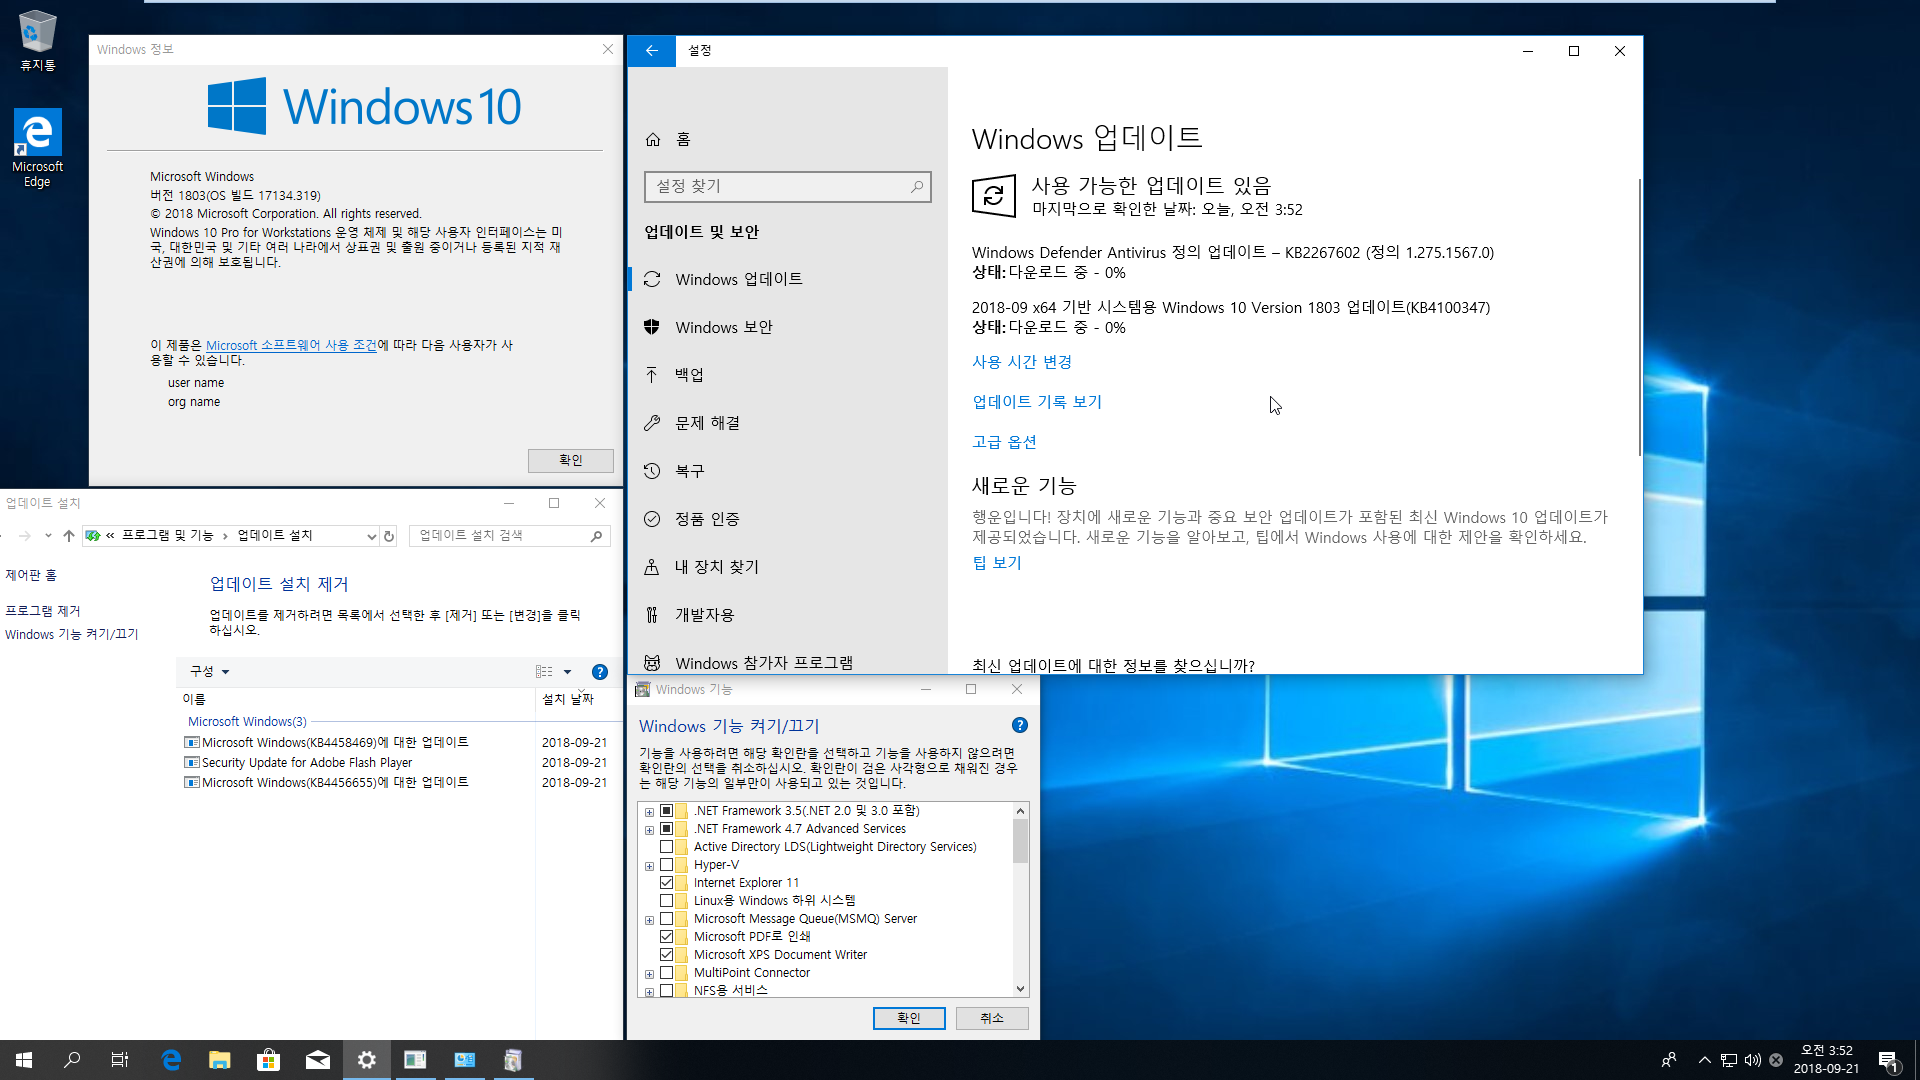 2018년 9월 21일 수시 업데이트 나왔네요 - Windows 10 버전1803 누적 업데이트 KB4458469 (OS 빌드 17134.319) 통합중 입니다 2018-09-21_035257.png